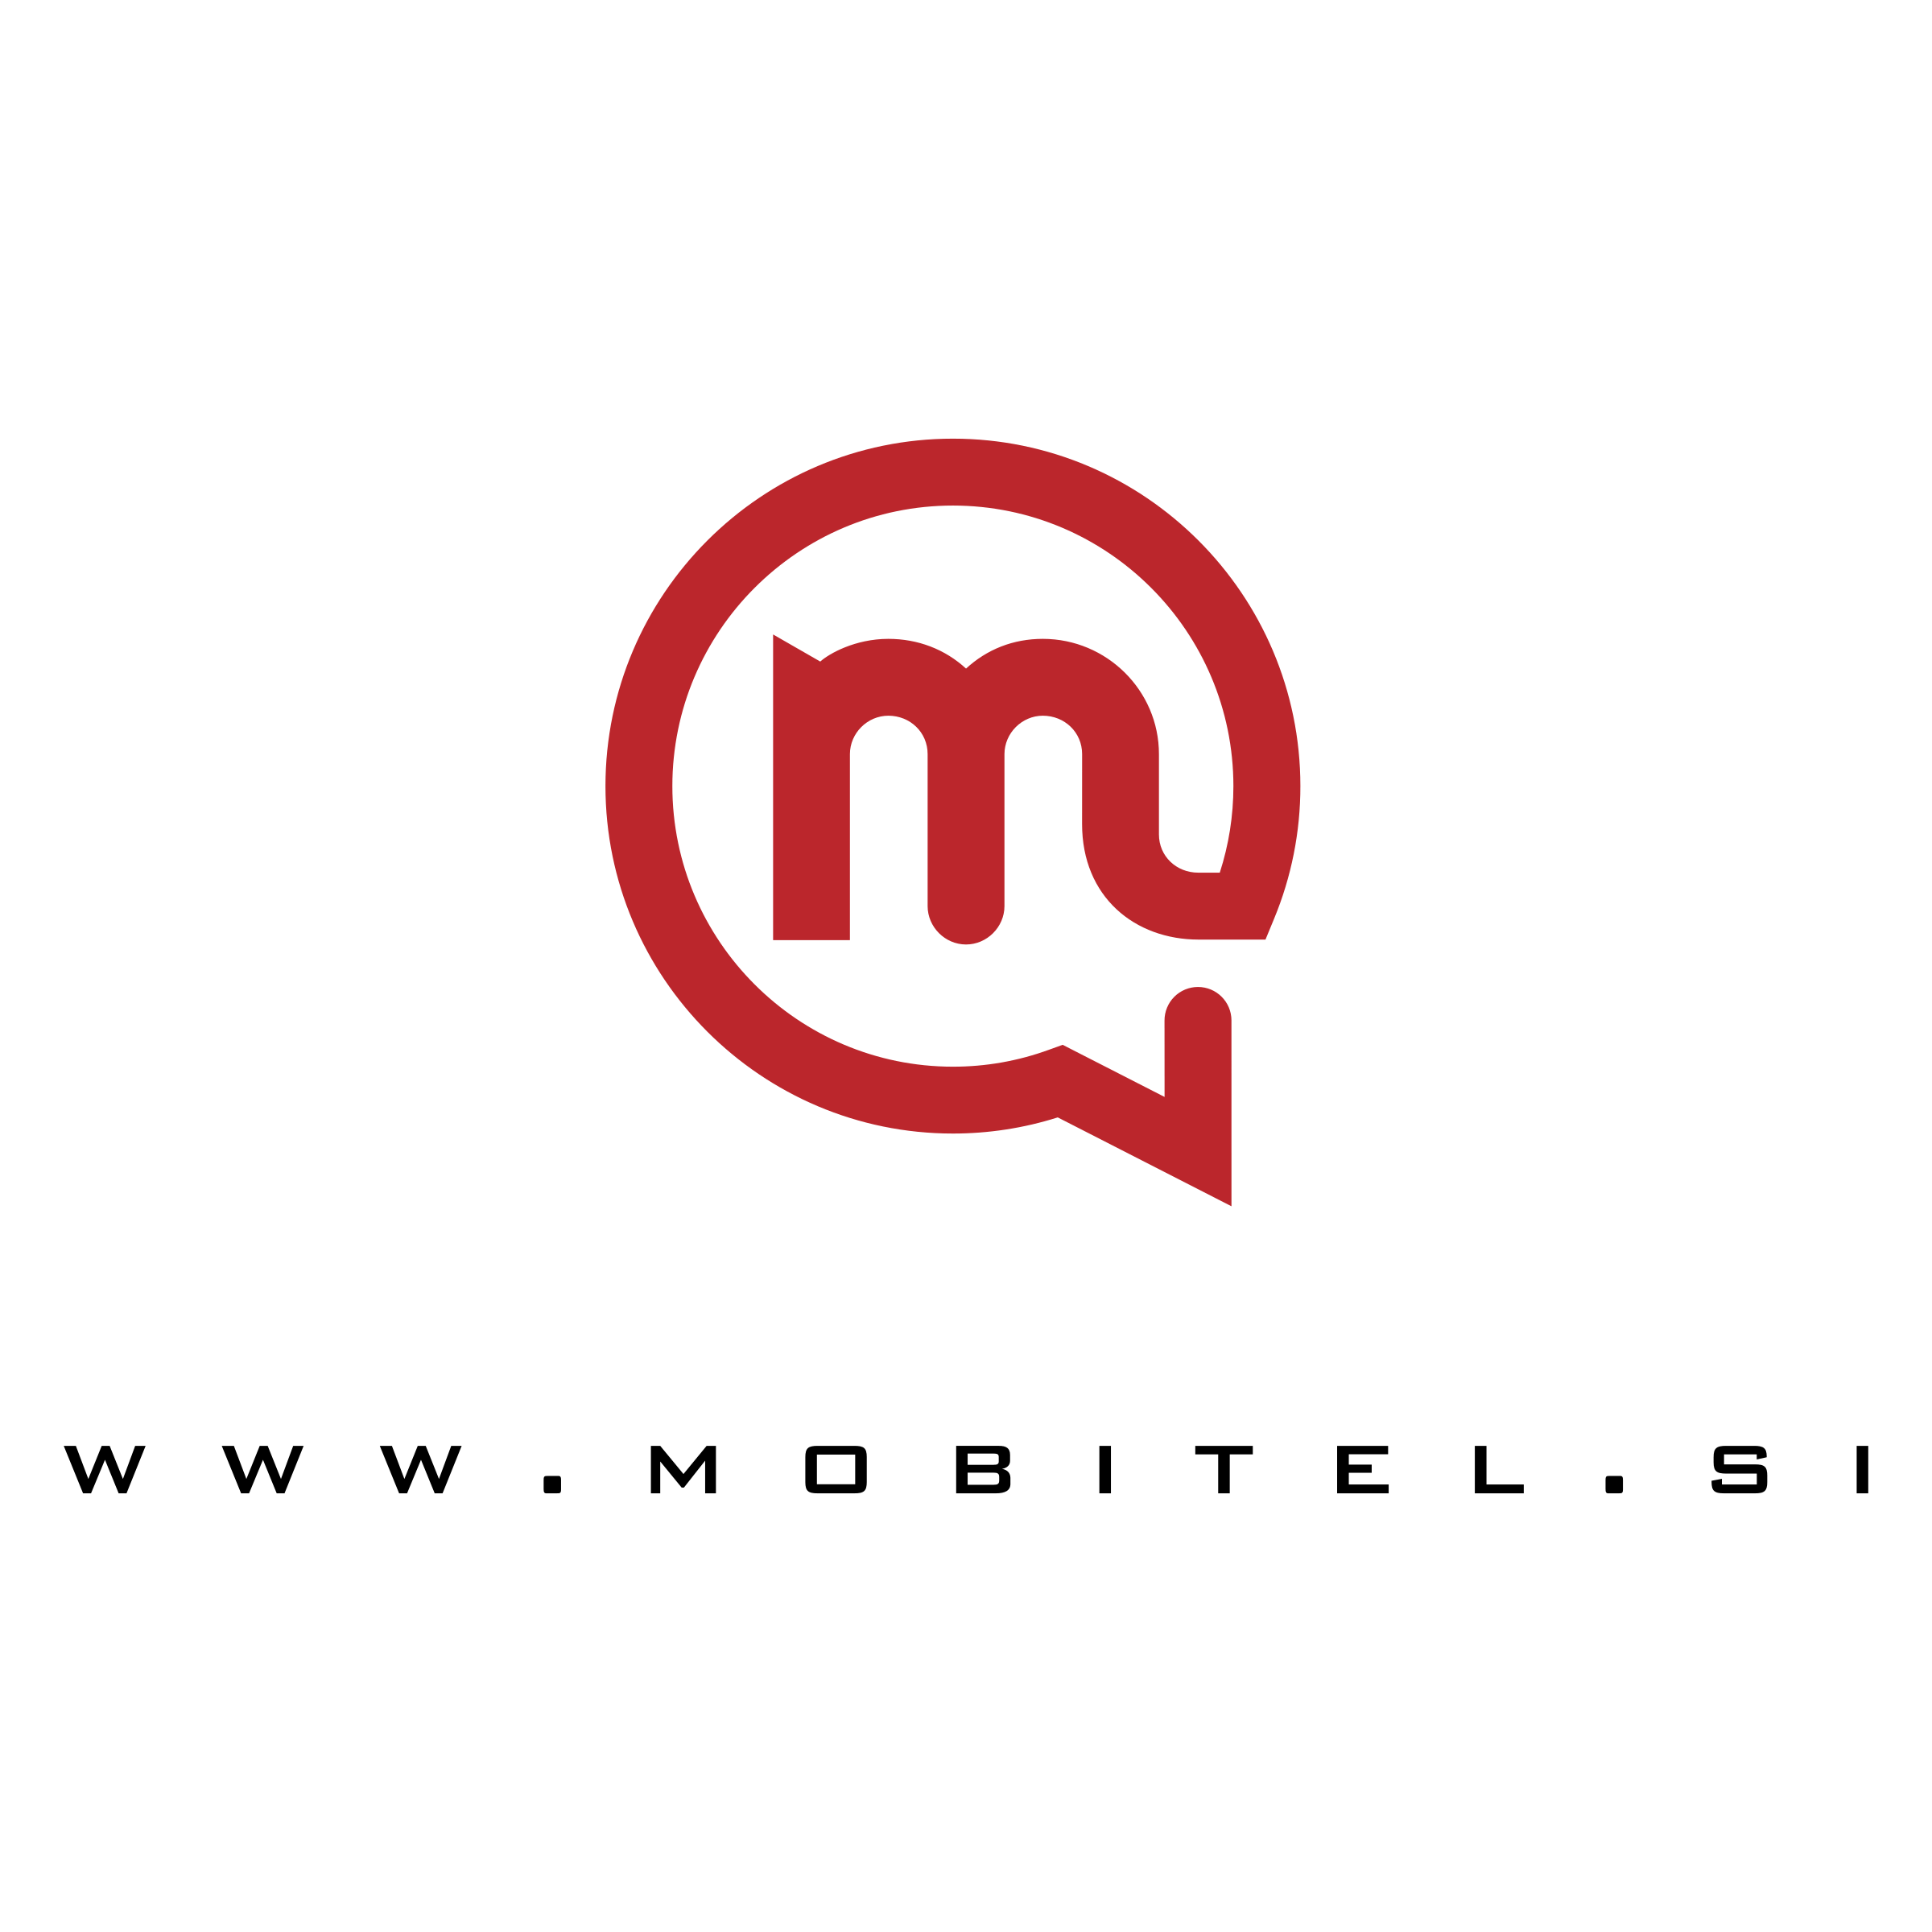 Mobitel Logo - Mobitel Logo PNG Transparent & SVG Vector - Freebie Supply